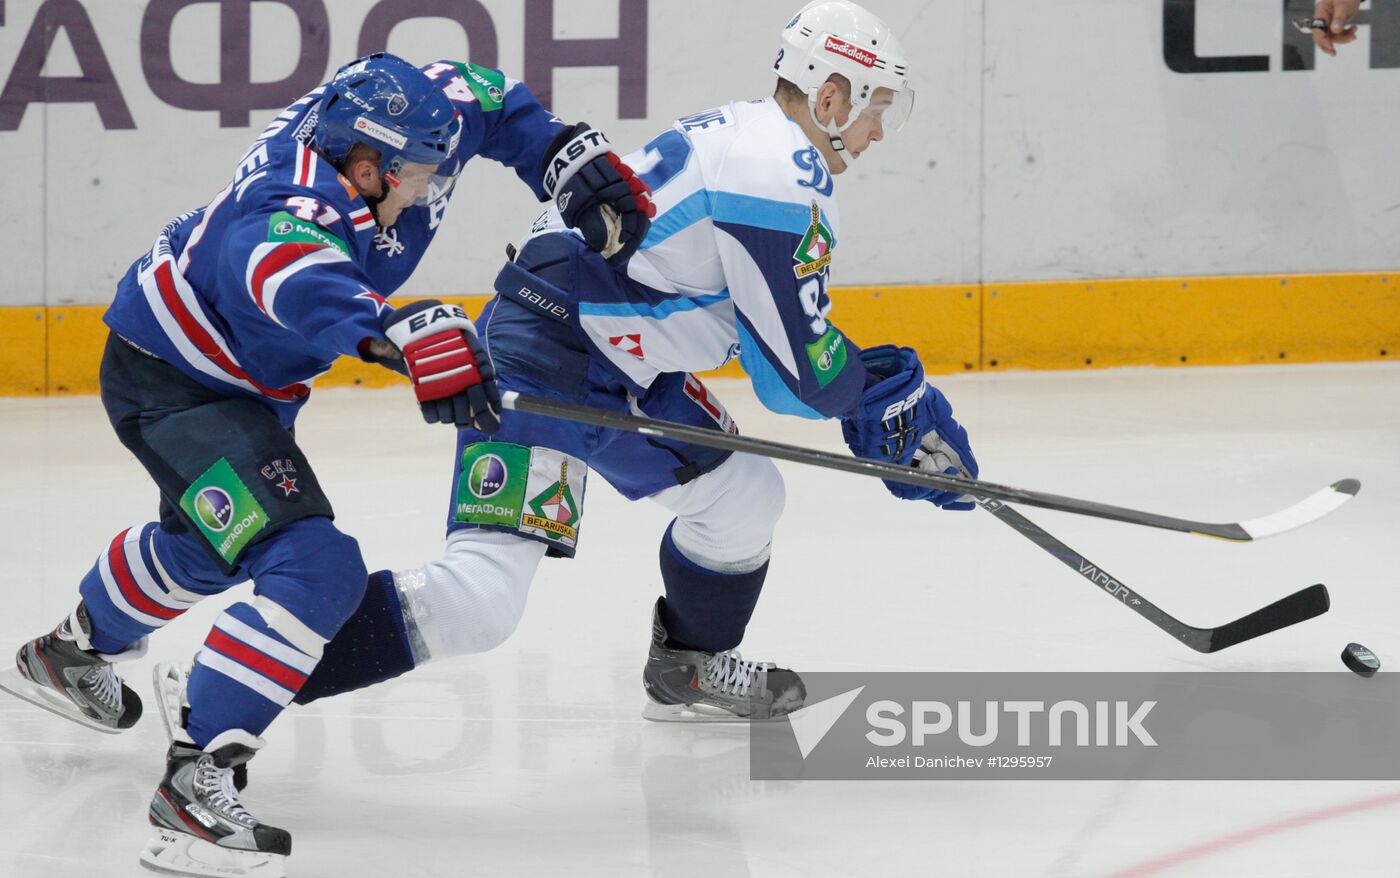 Hockey KHL. SKA - Dynamo (Minsk)